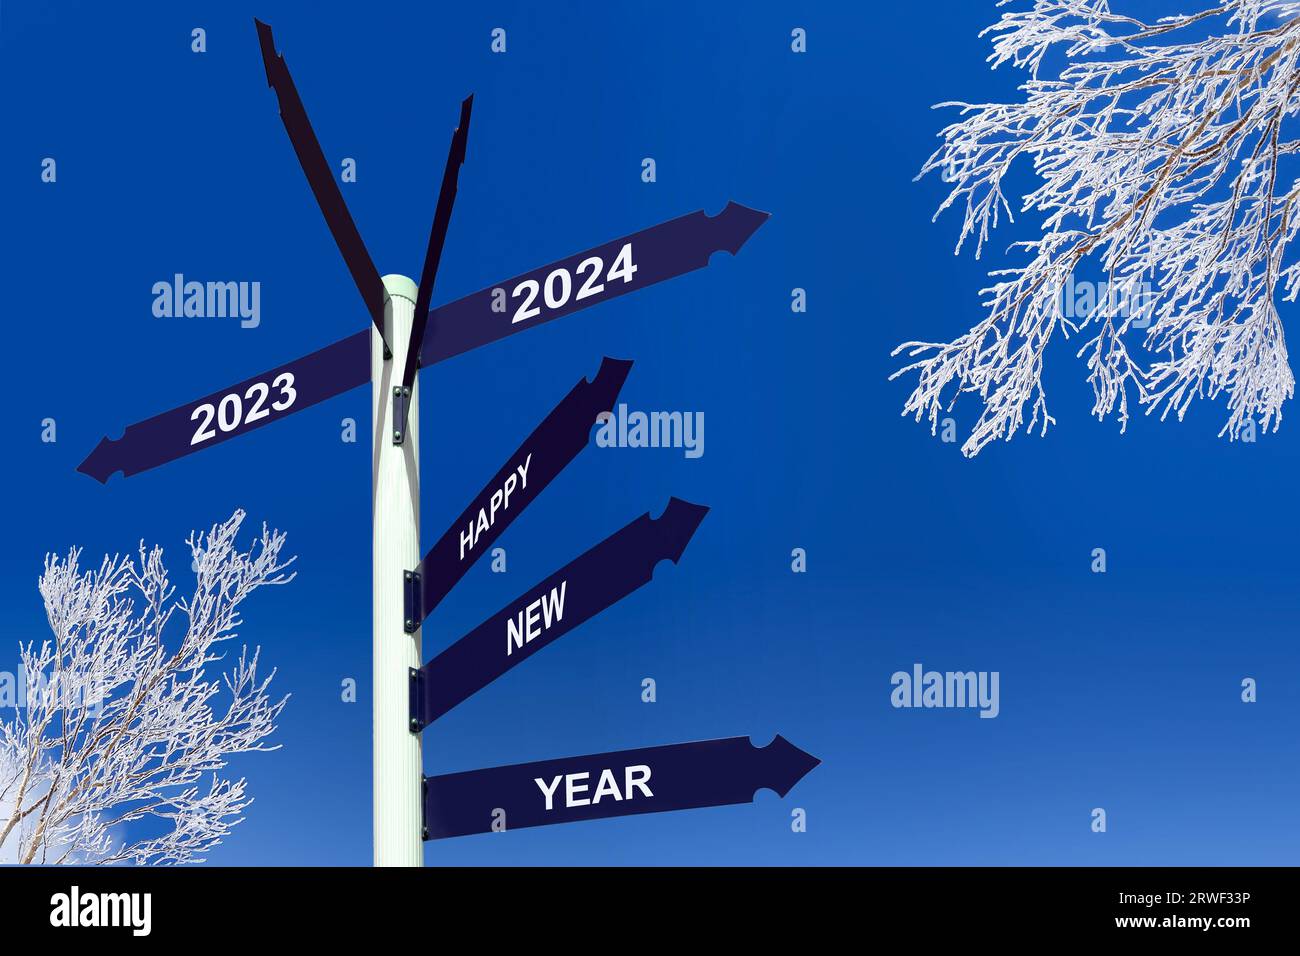 Bonne année 2024 sur les panneaux de direction, les arbres neigeux et le ciel bleu, salutations d'hiver Banque D'Images